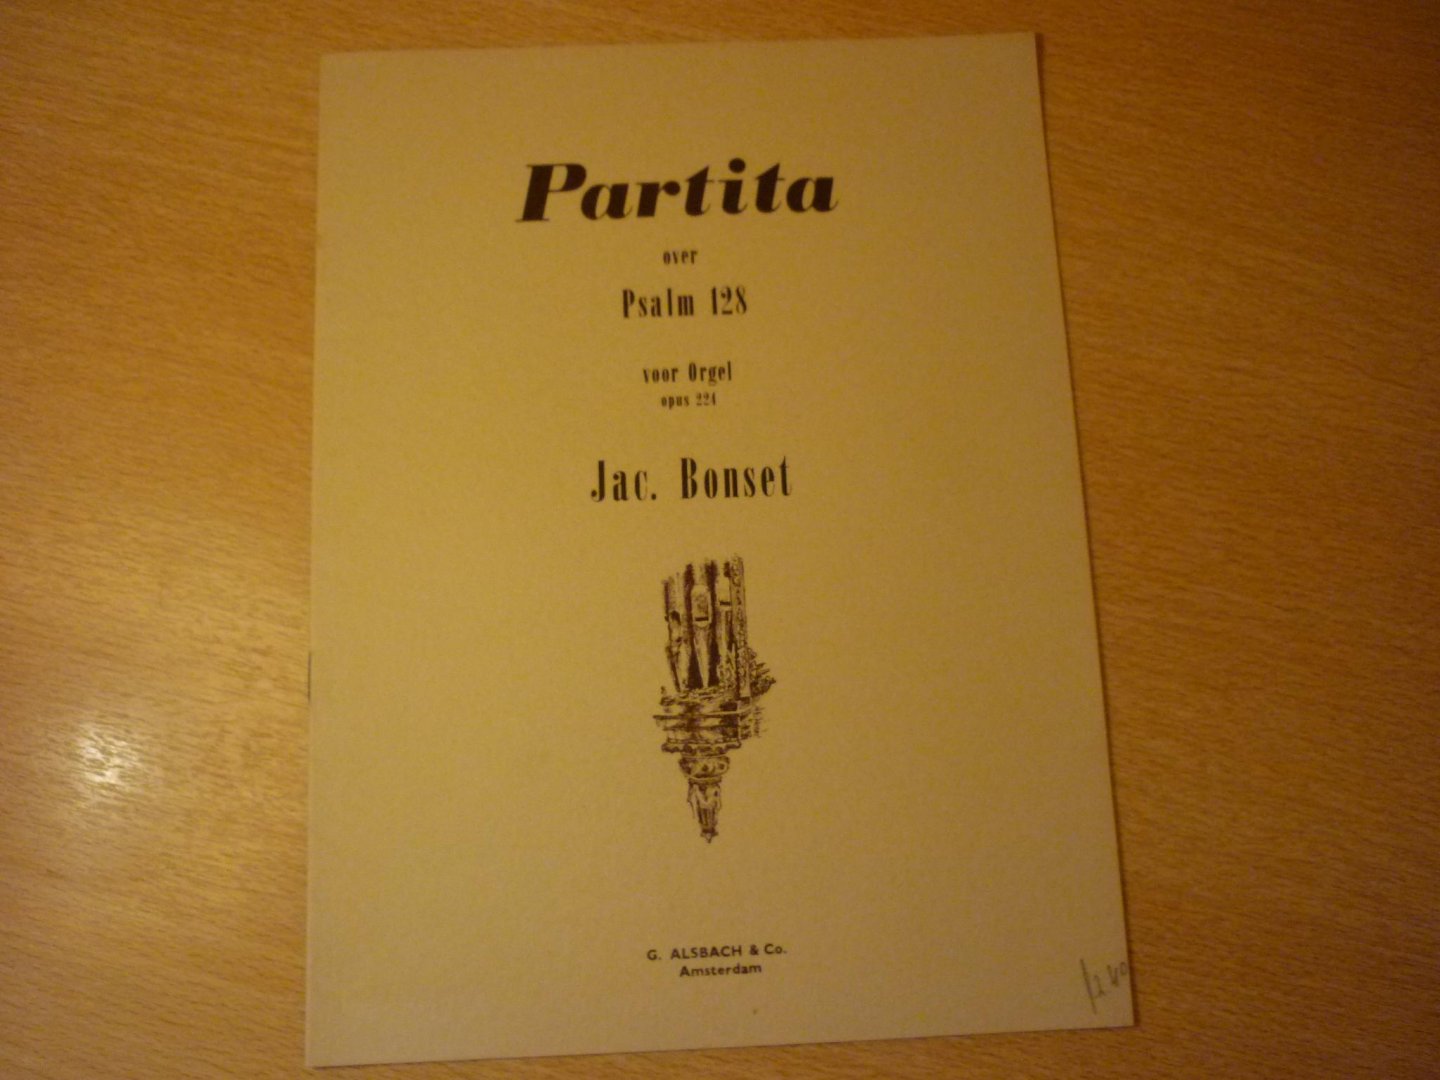 Bonset; Jac. - Partita over Psalm 128; Voor orgel; Opus 224